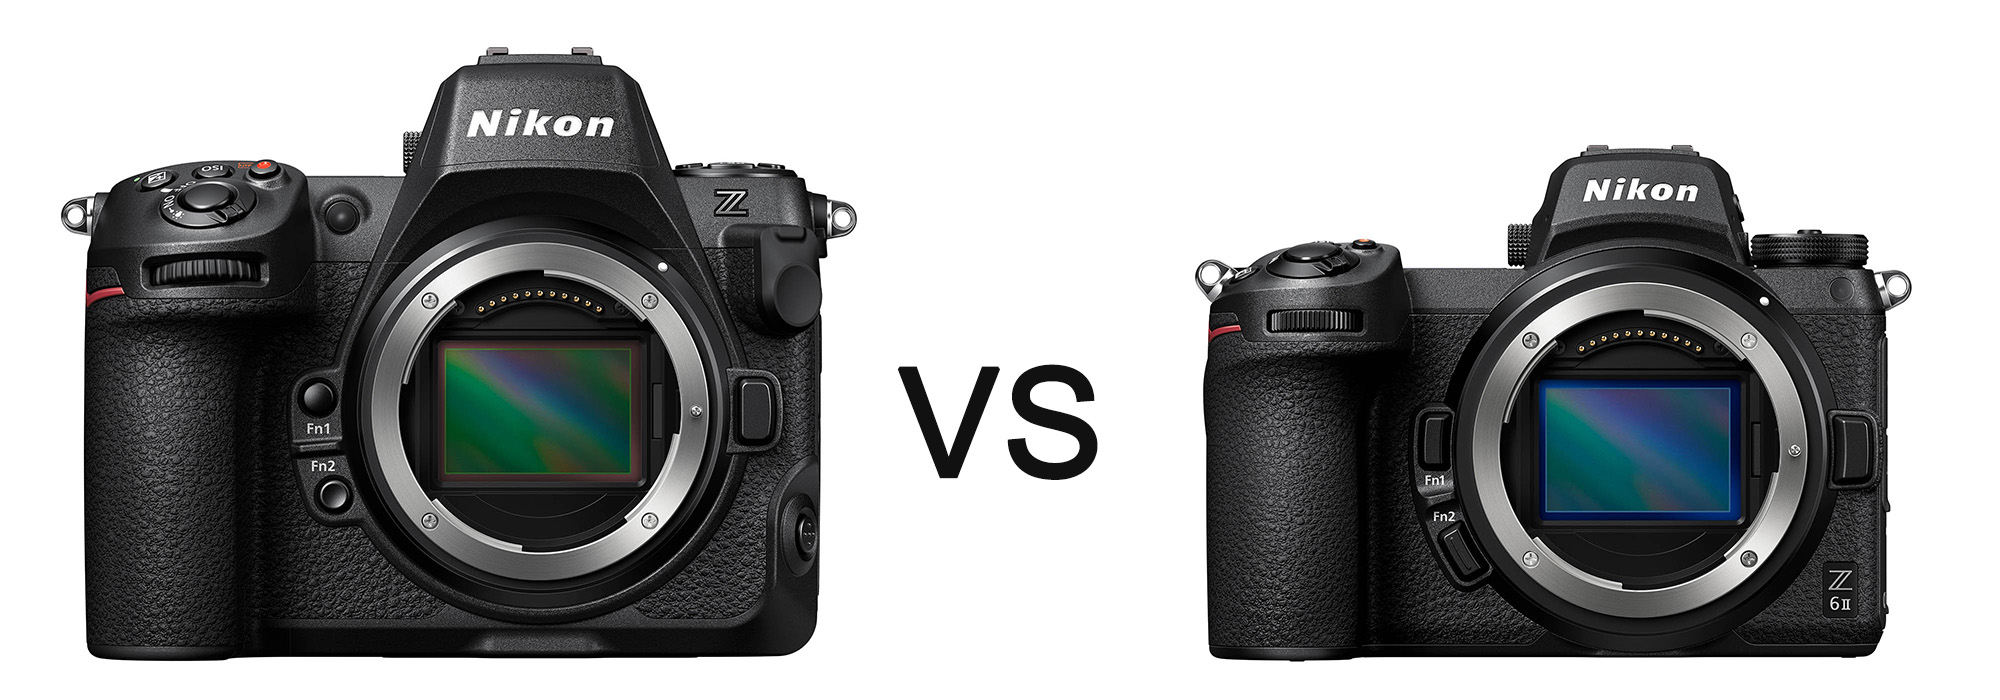 Nikon Z8 vs Z6ii